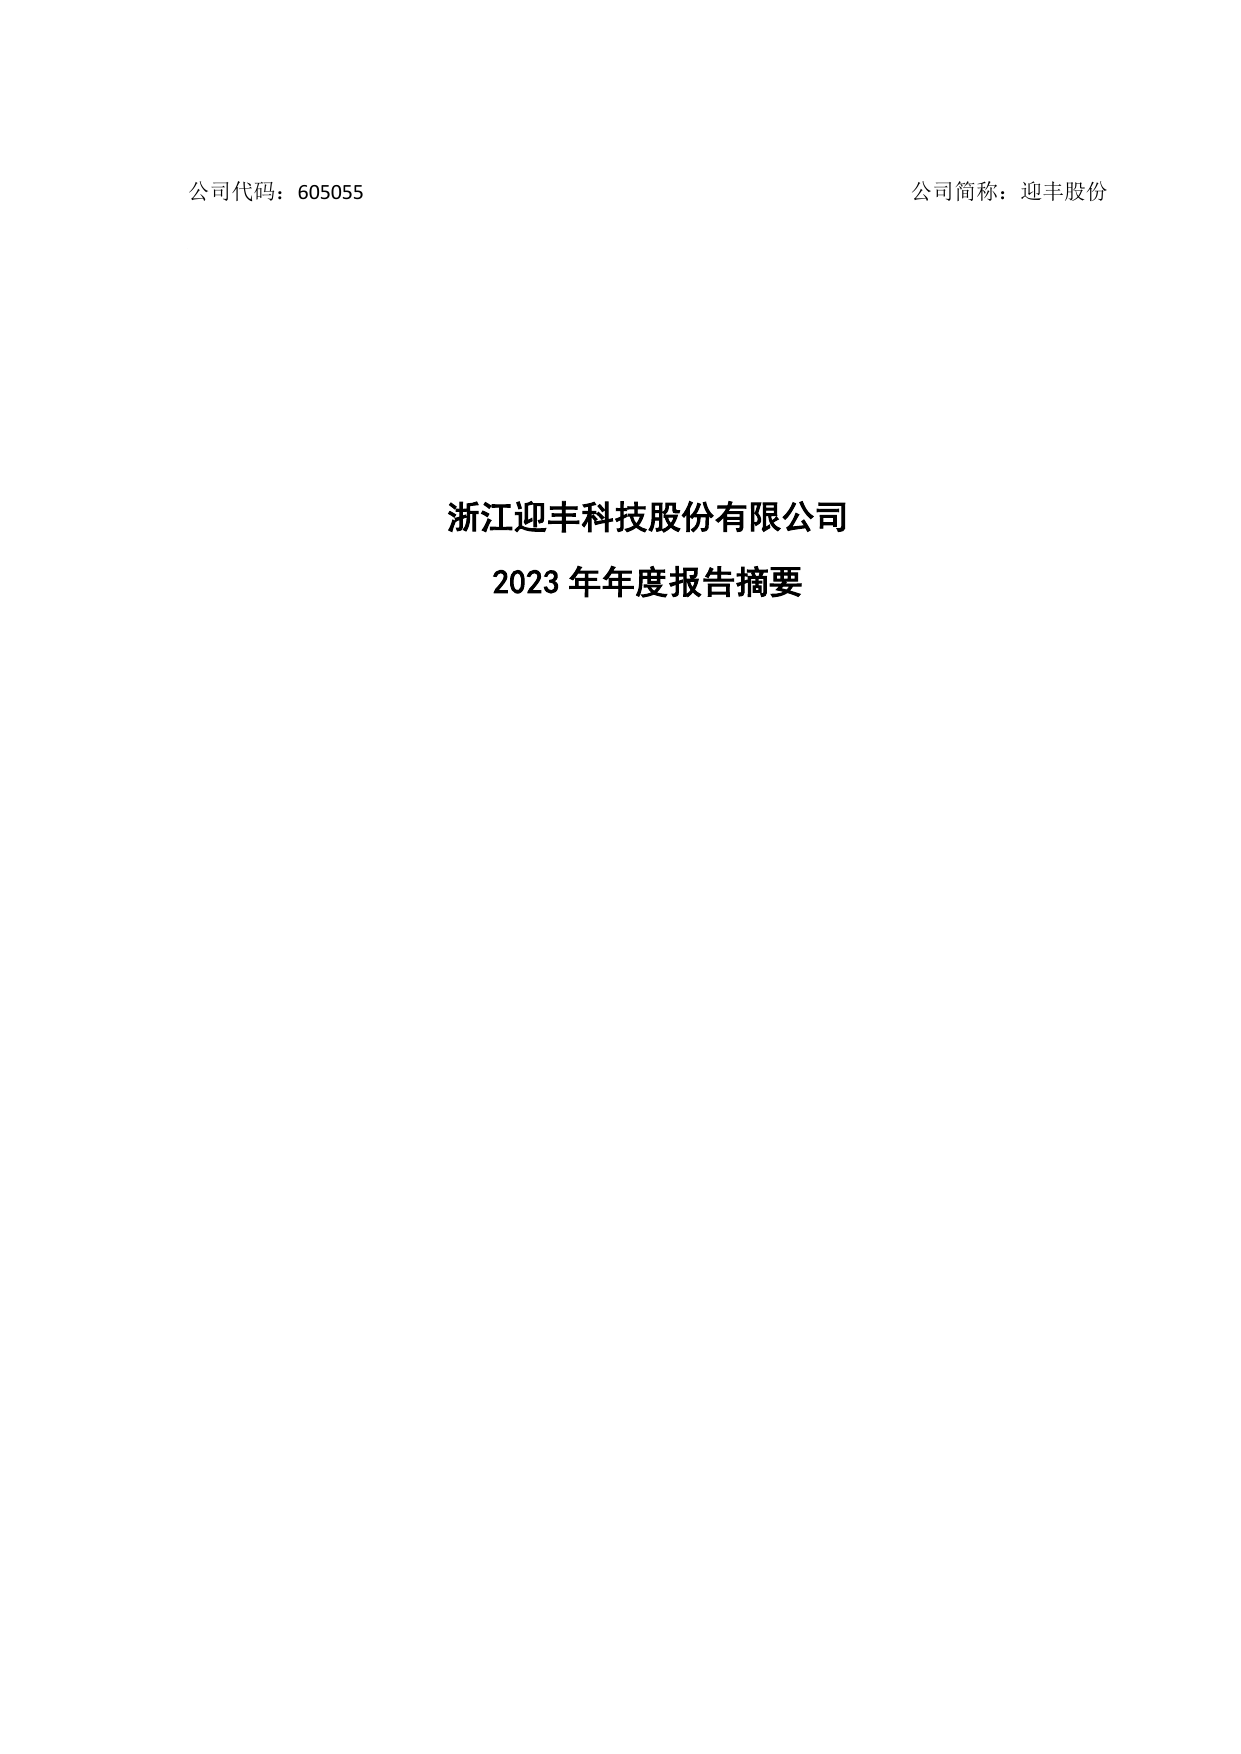 迎丰股份2023年年度报告摘要.pdf